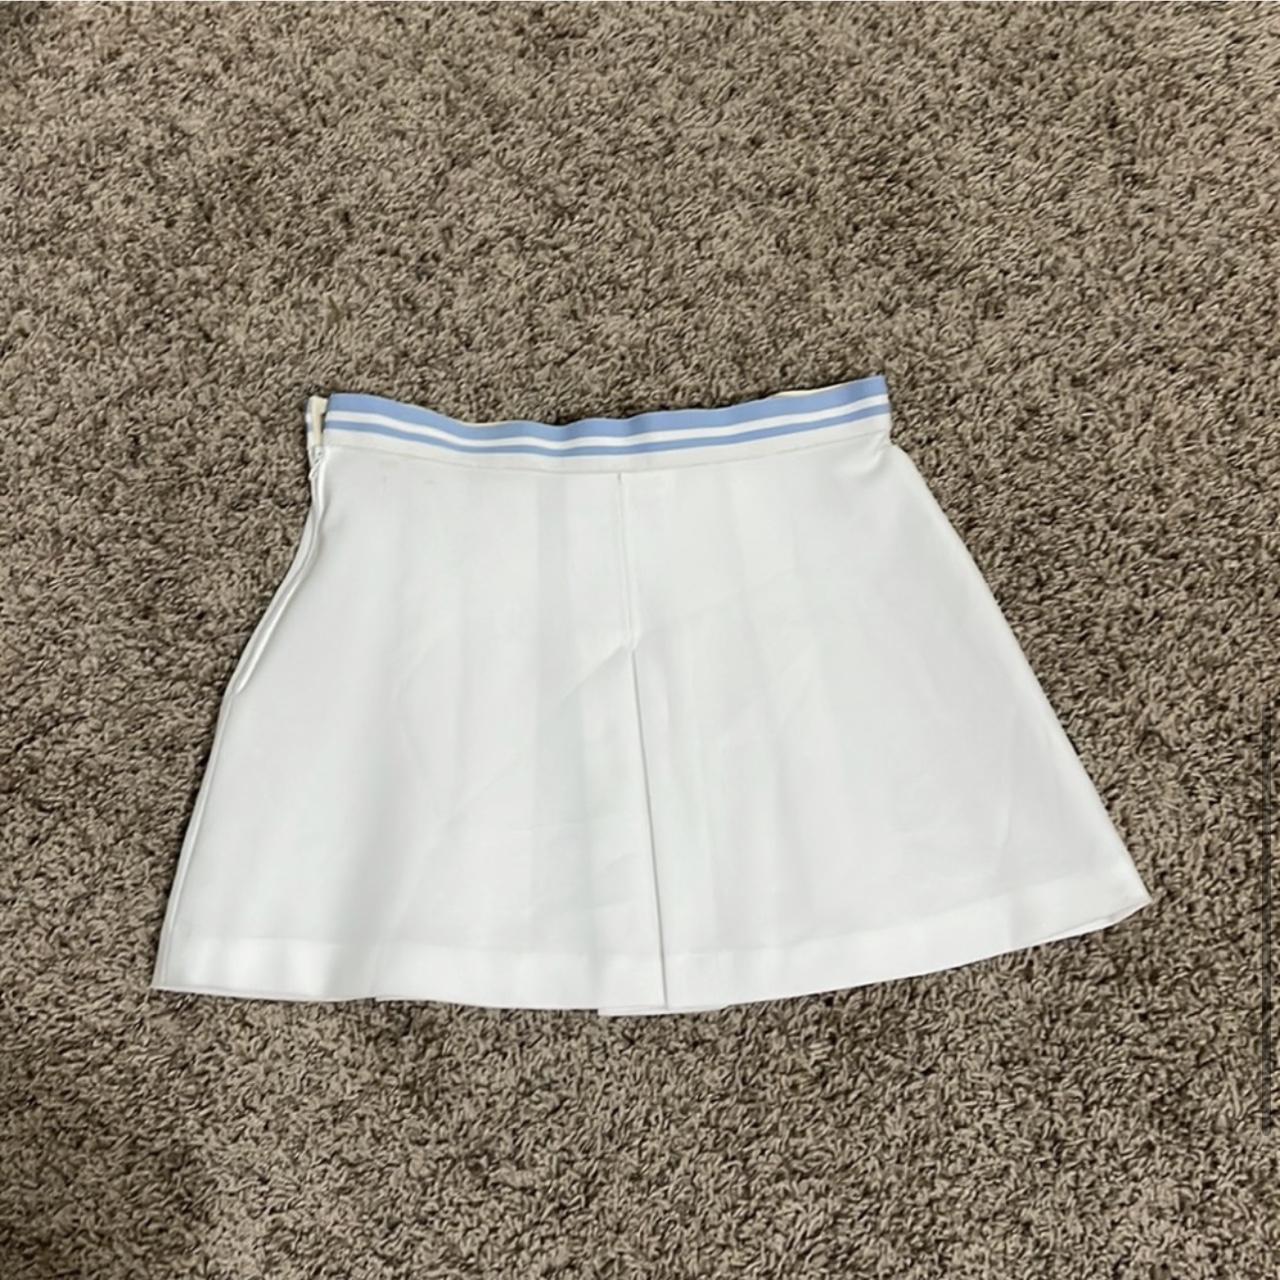 Ellesse Women's White and Blue Skirt (3)